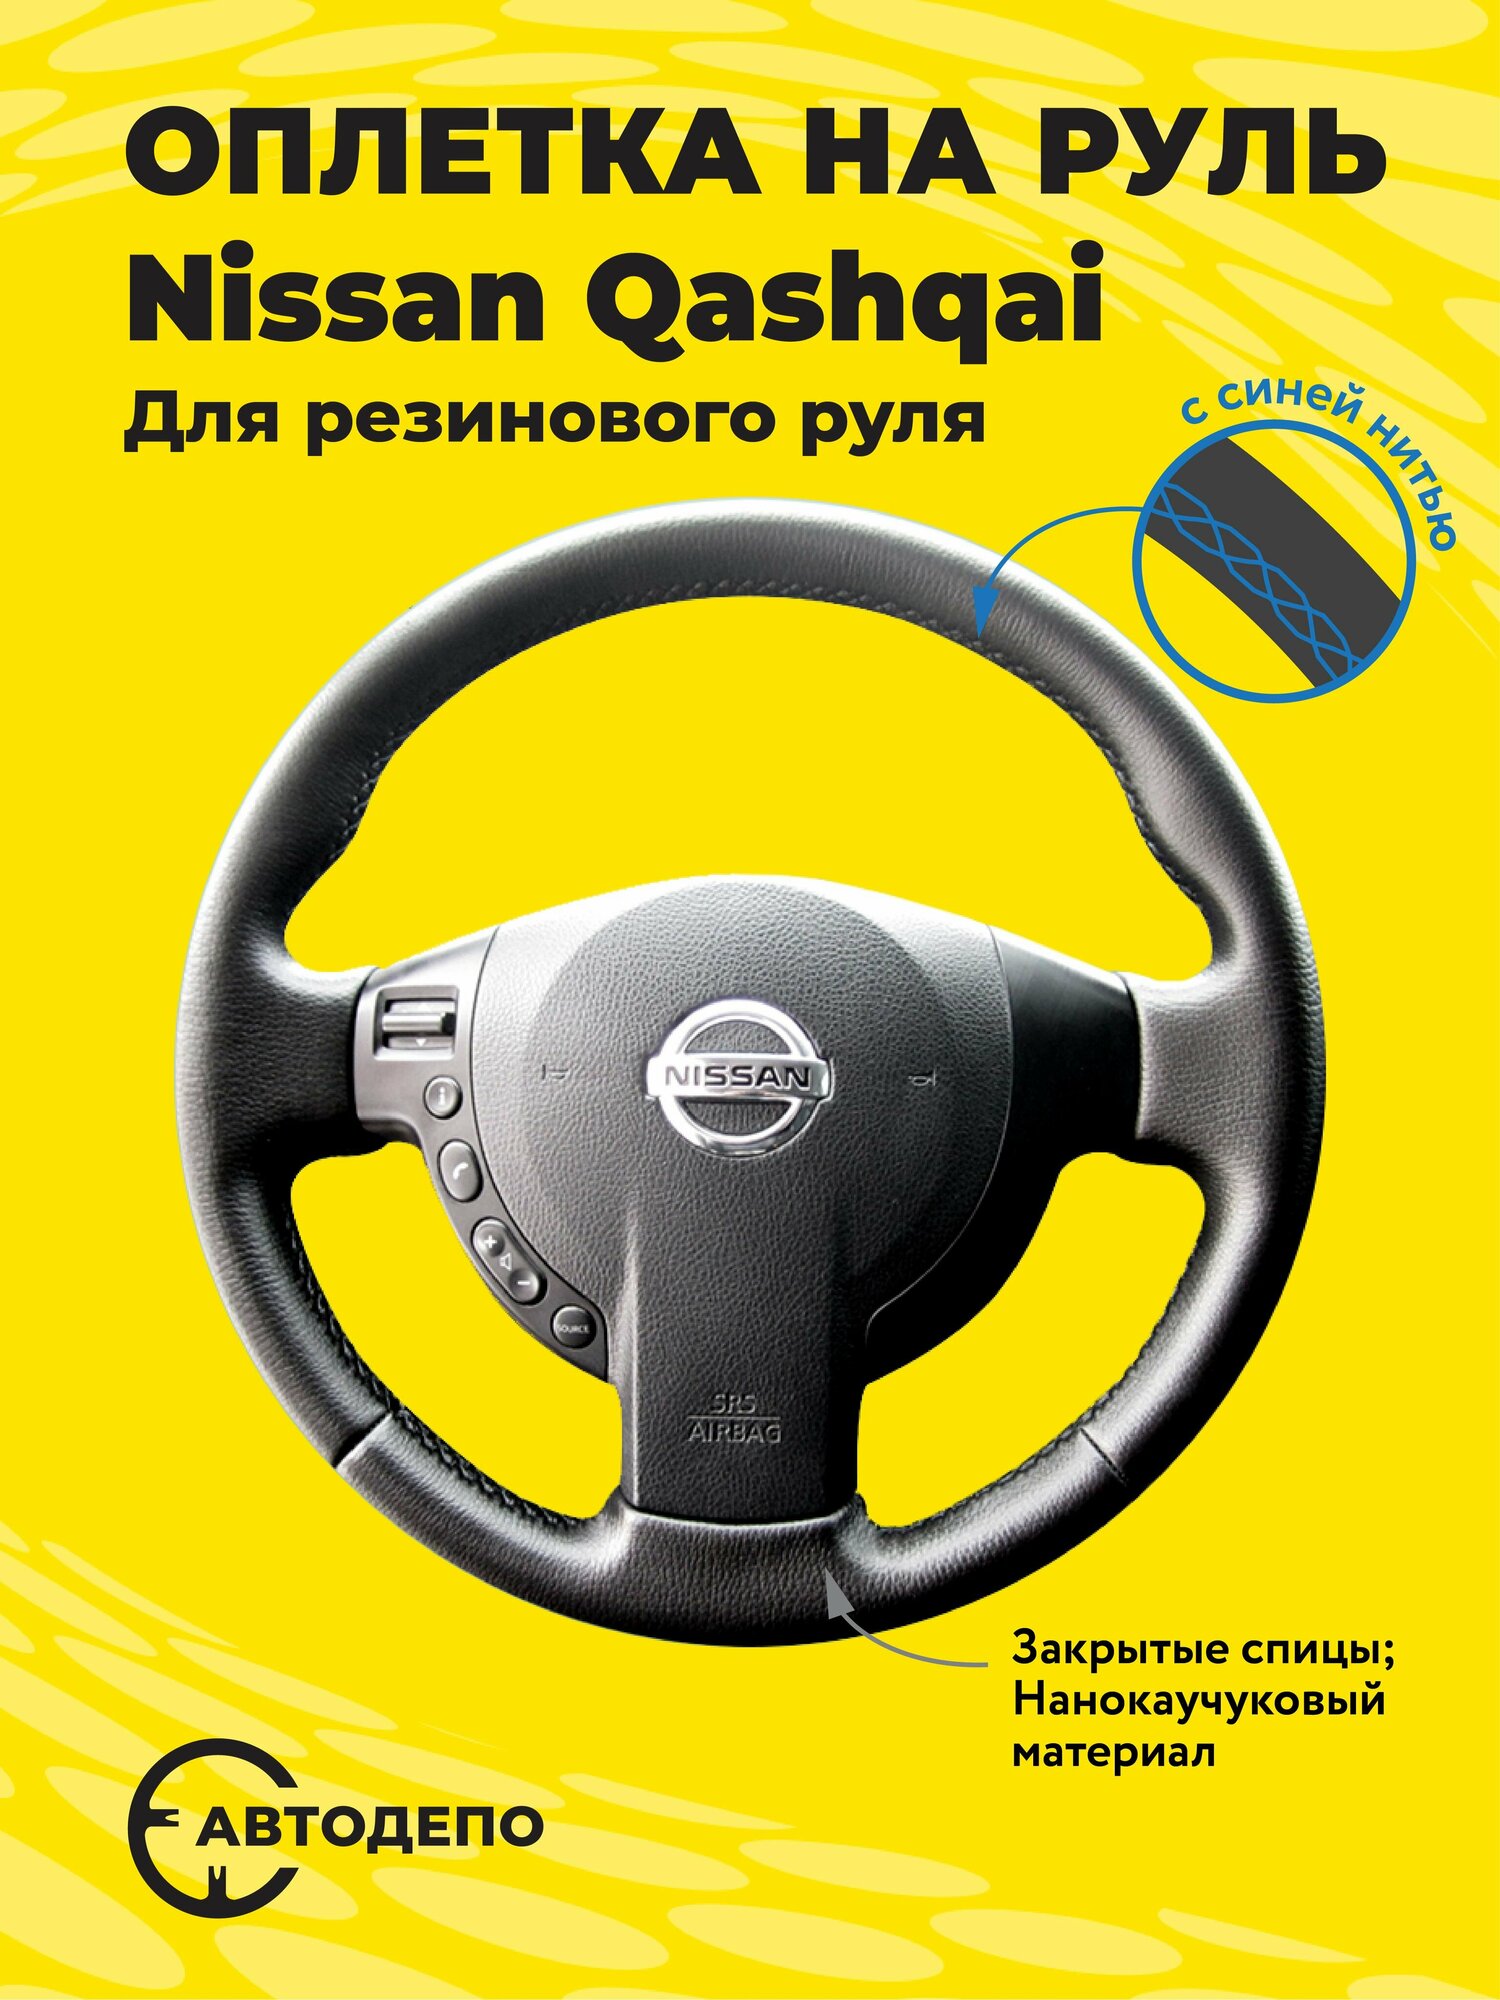 Оплетка на руль Nissan Qashqai для резинового руля черная кожа с синим швом.